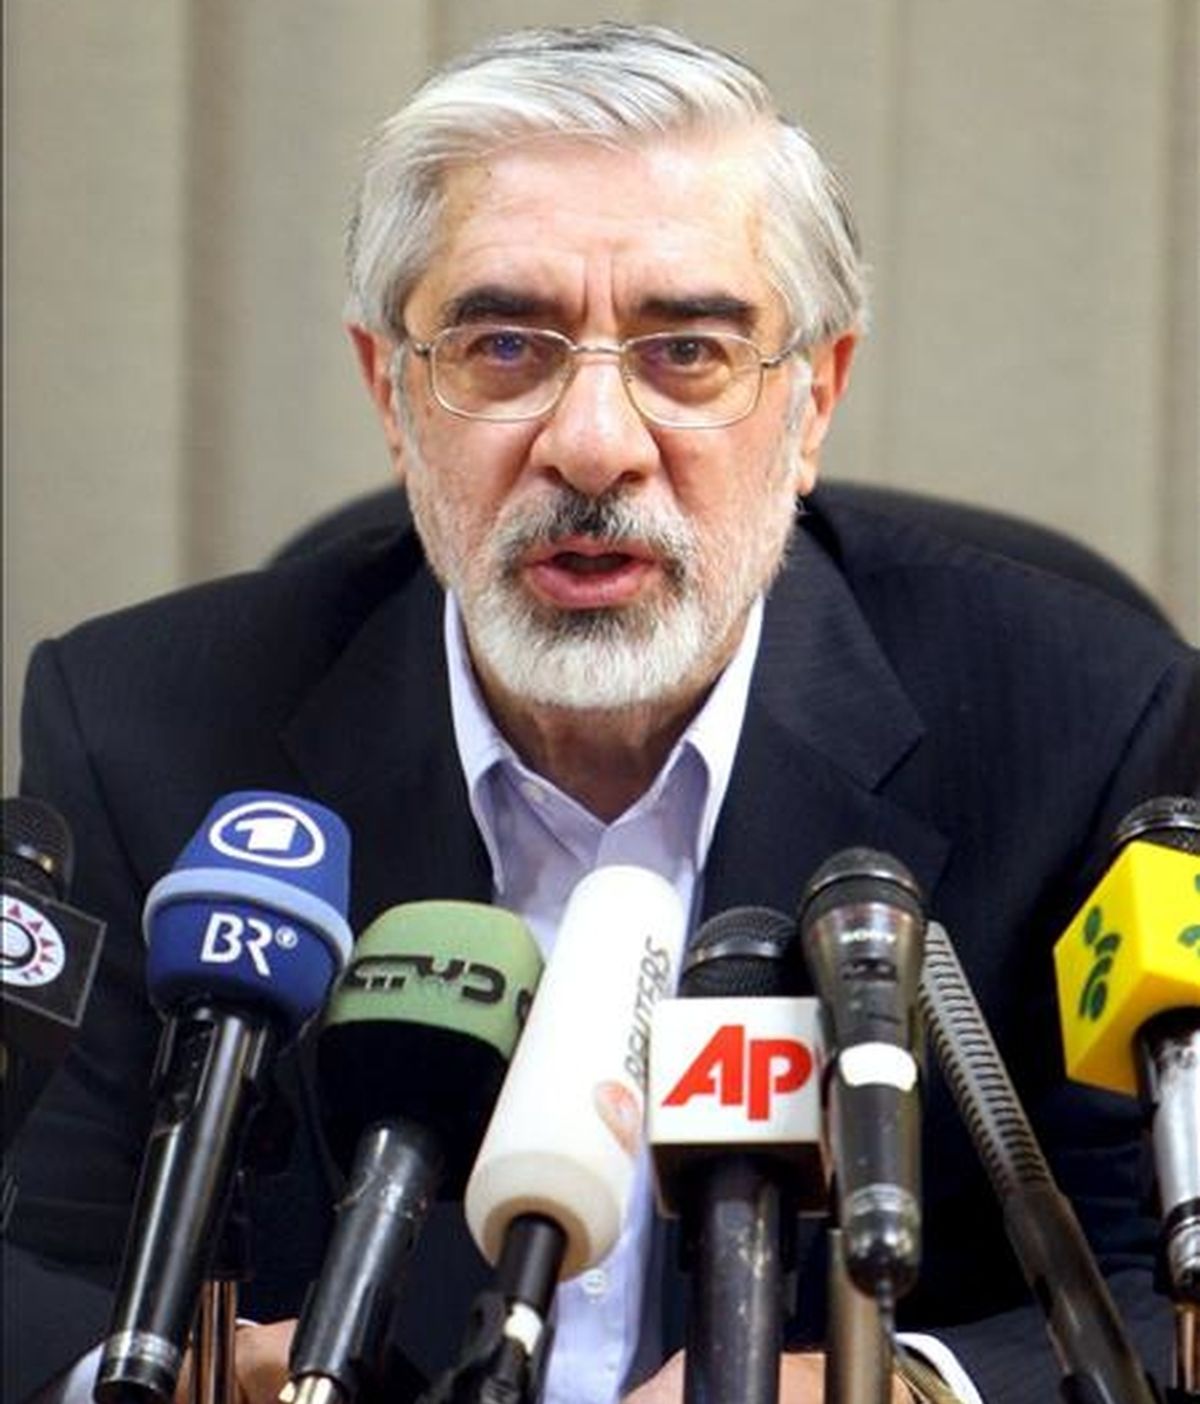 El candidato opositor reformista, Mir Husein Musaví, pidió hoy oficialmente al poderoso Consejo de Guardianes que anule los resultados de las elecciones presidenciales del pasado viernes debido a las supuestas irregularidades cometidas. EFE/Archivo